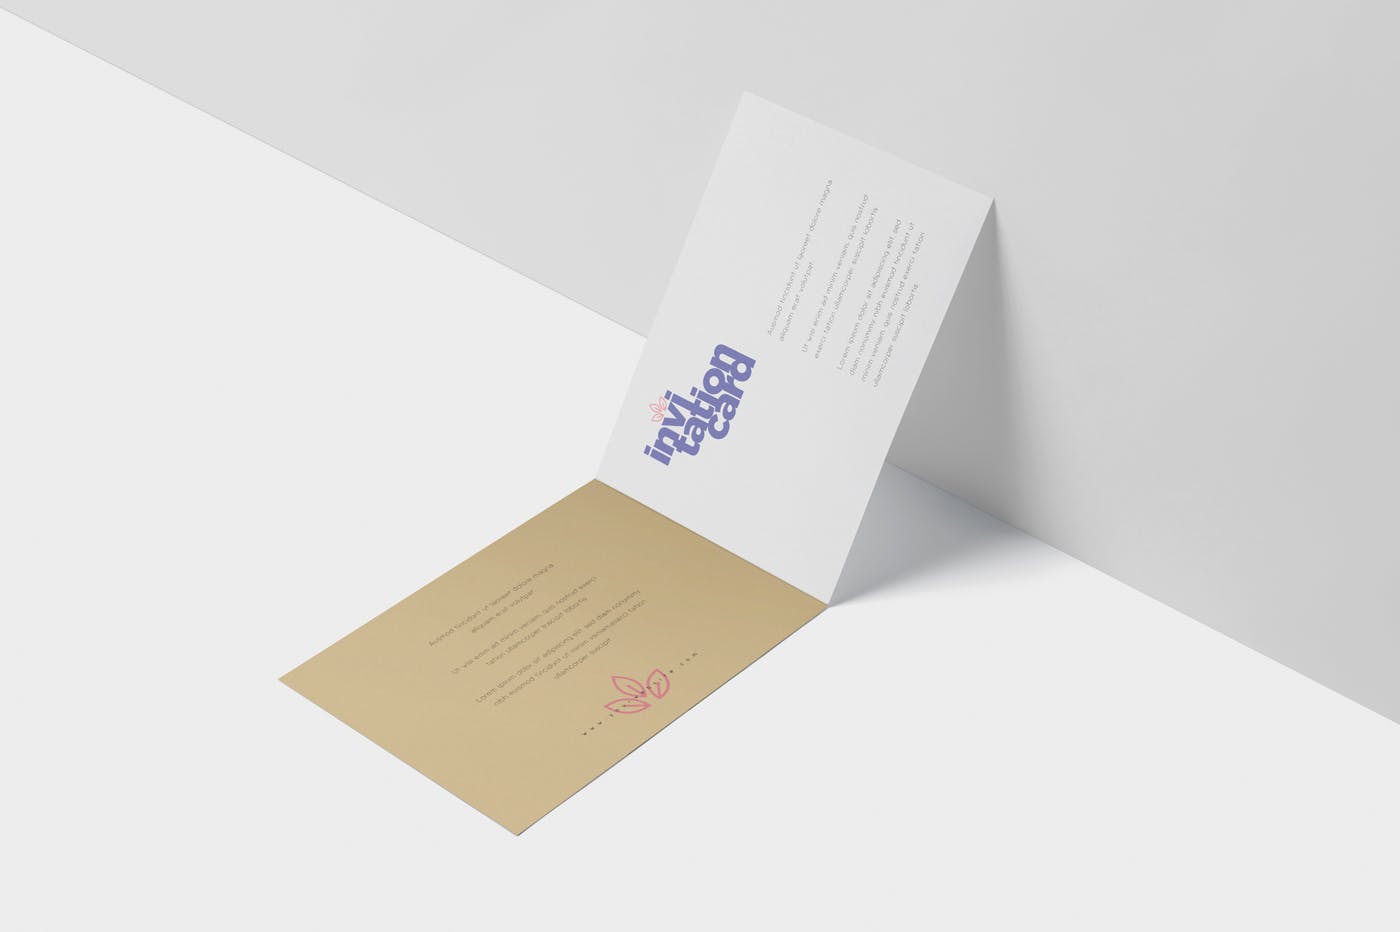 创意邀请卡/邀请函设计图样机第一素材精选 Invitation Card Mock-Up Set插图(4)